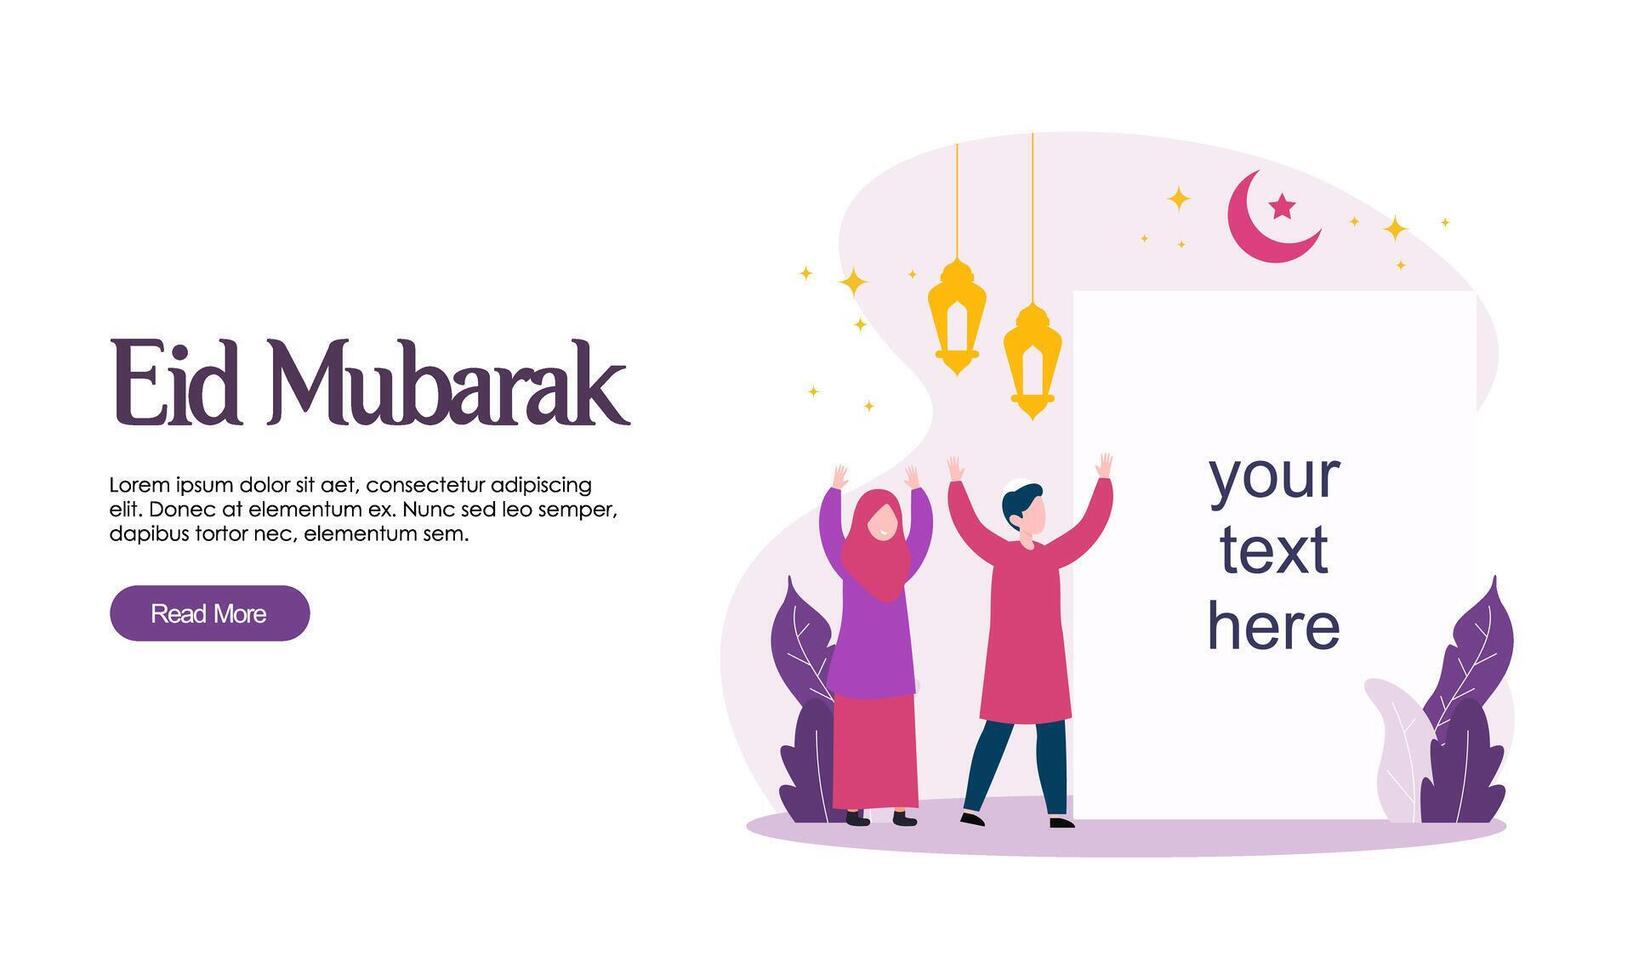 glad eid mubarak eller ramadan hälsning med människor karaktär vektor